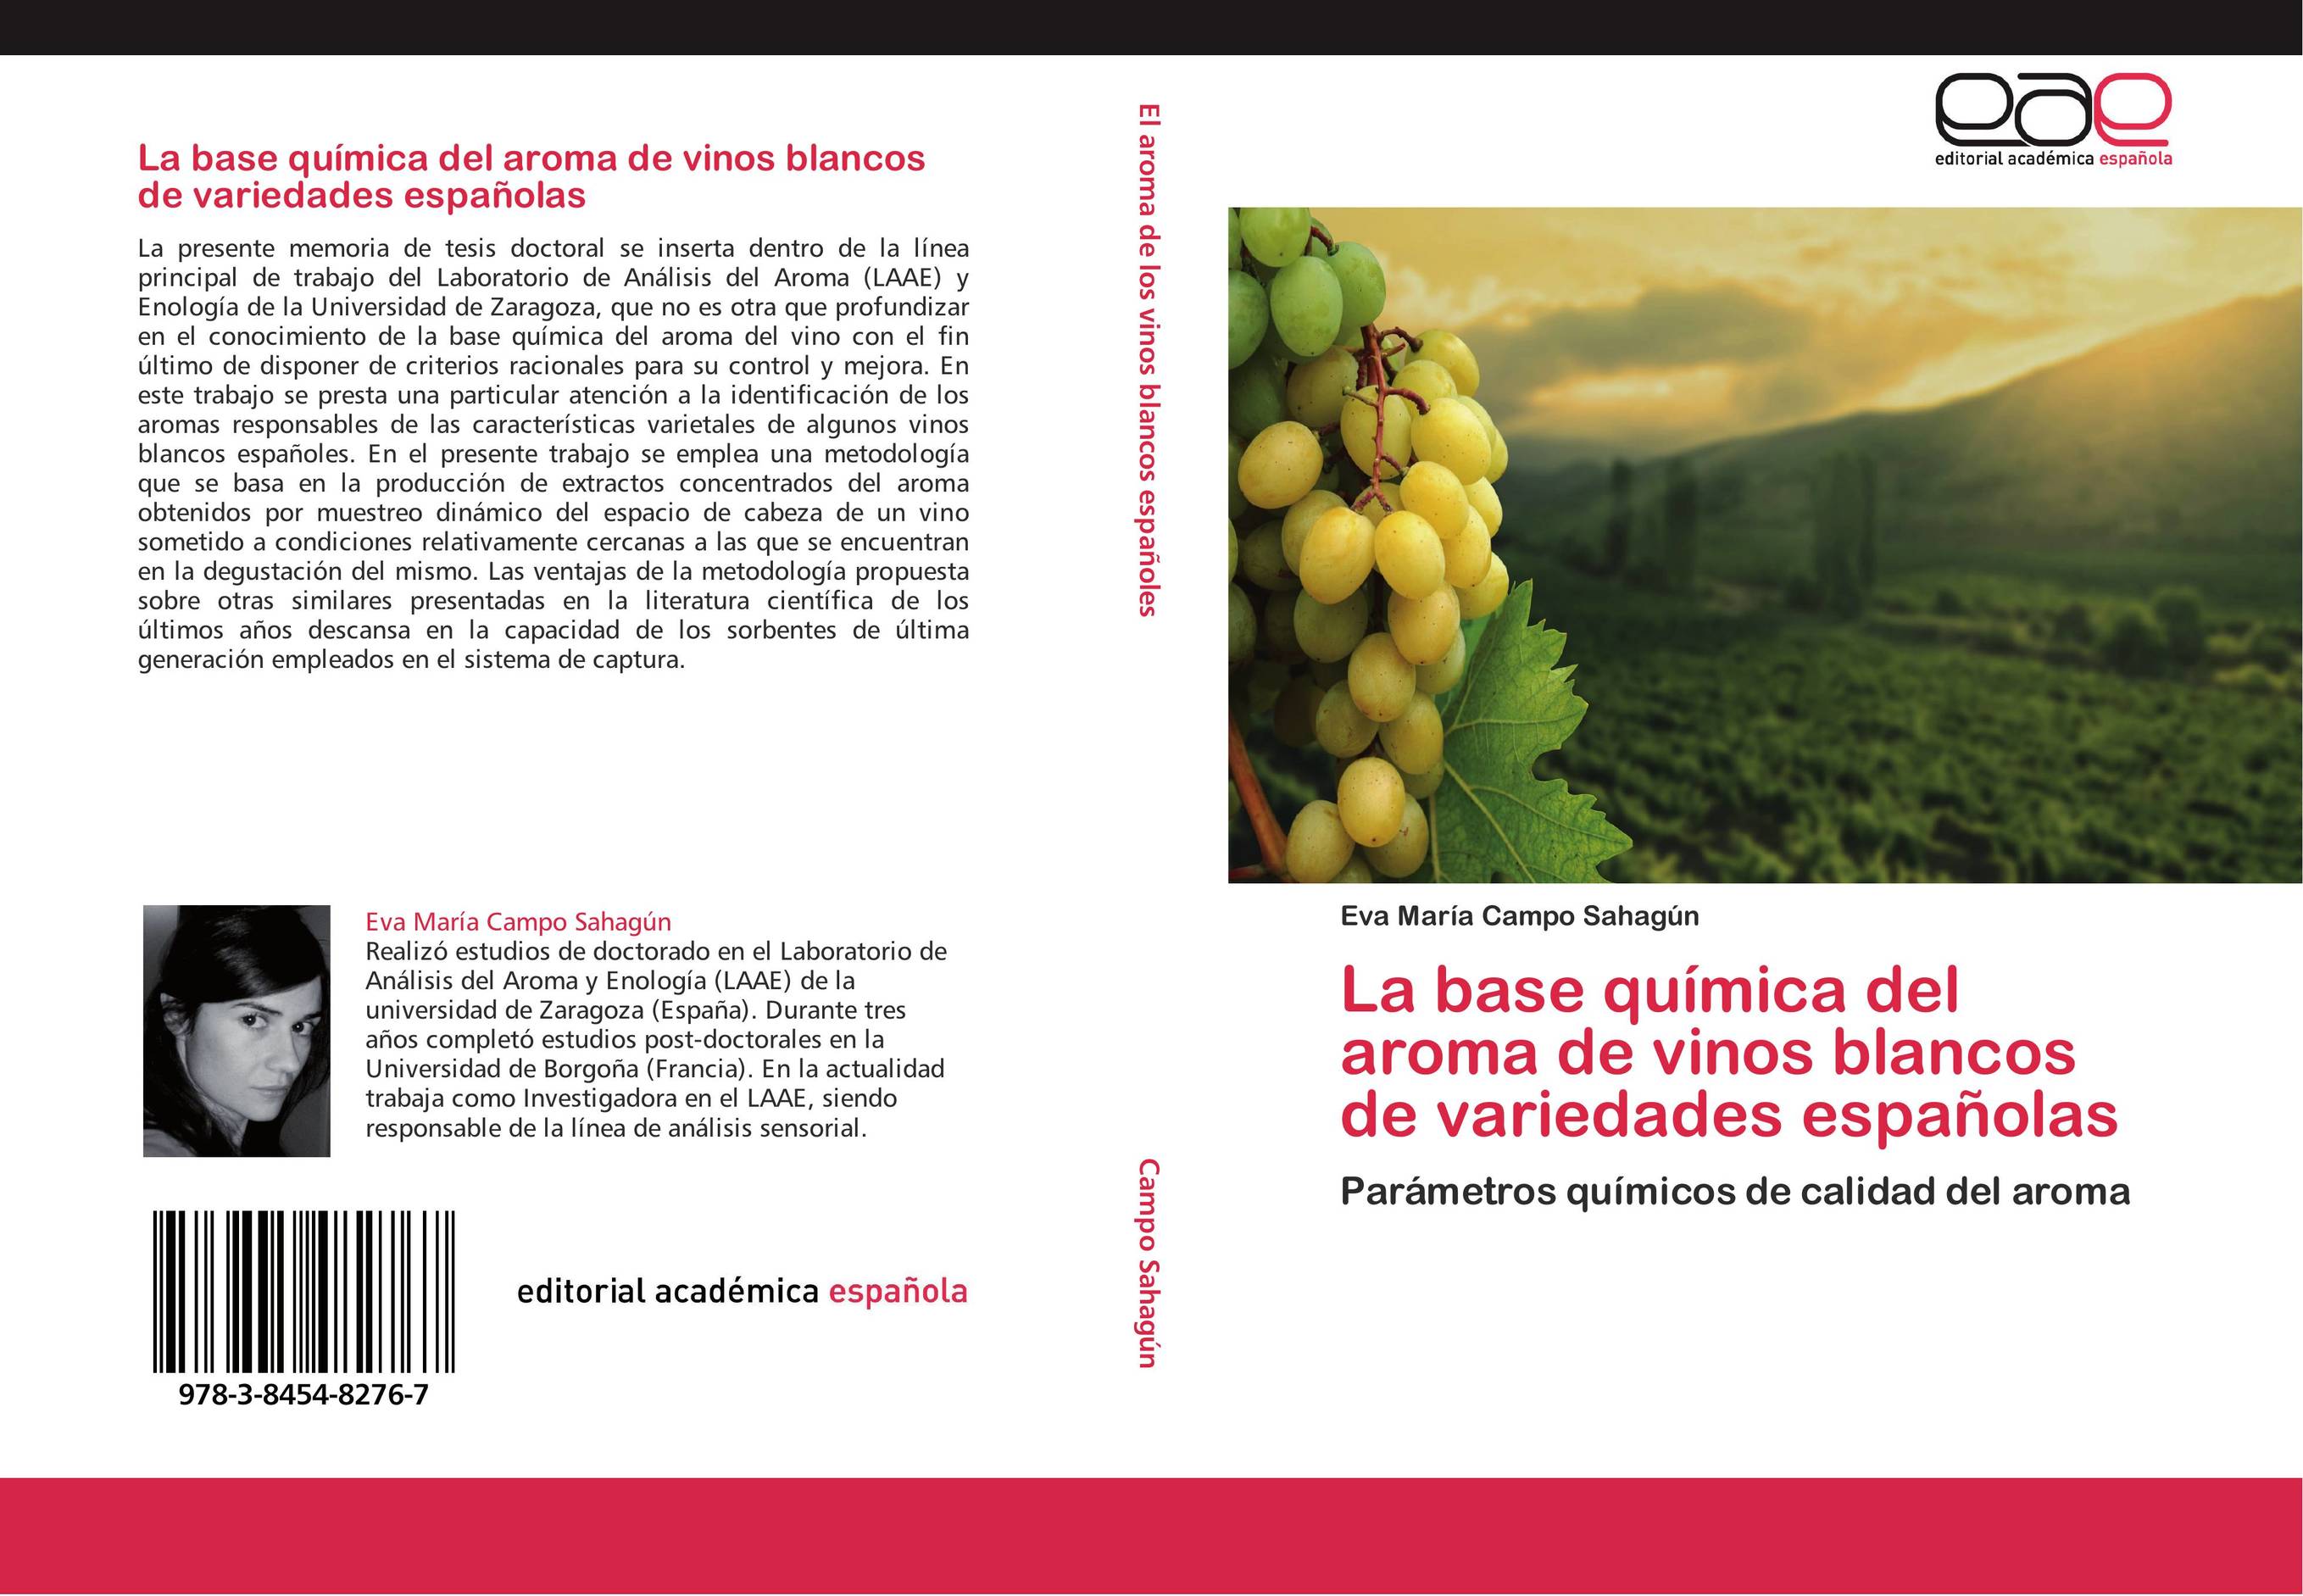 La base química del aroma de vinos blancos de variedades españolas